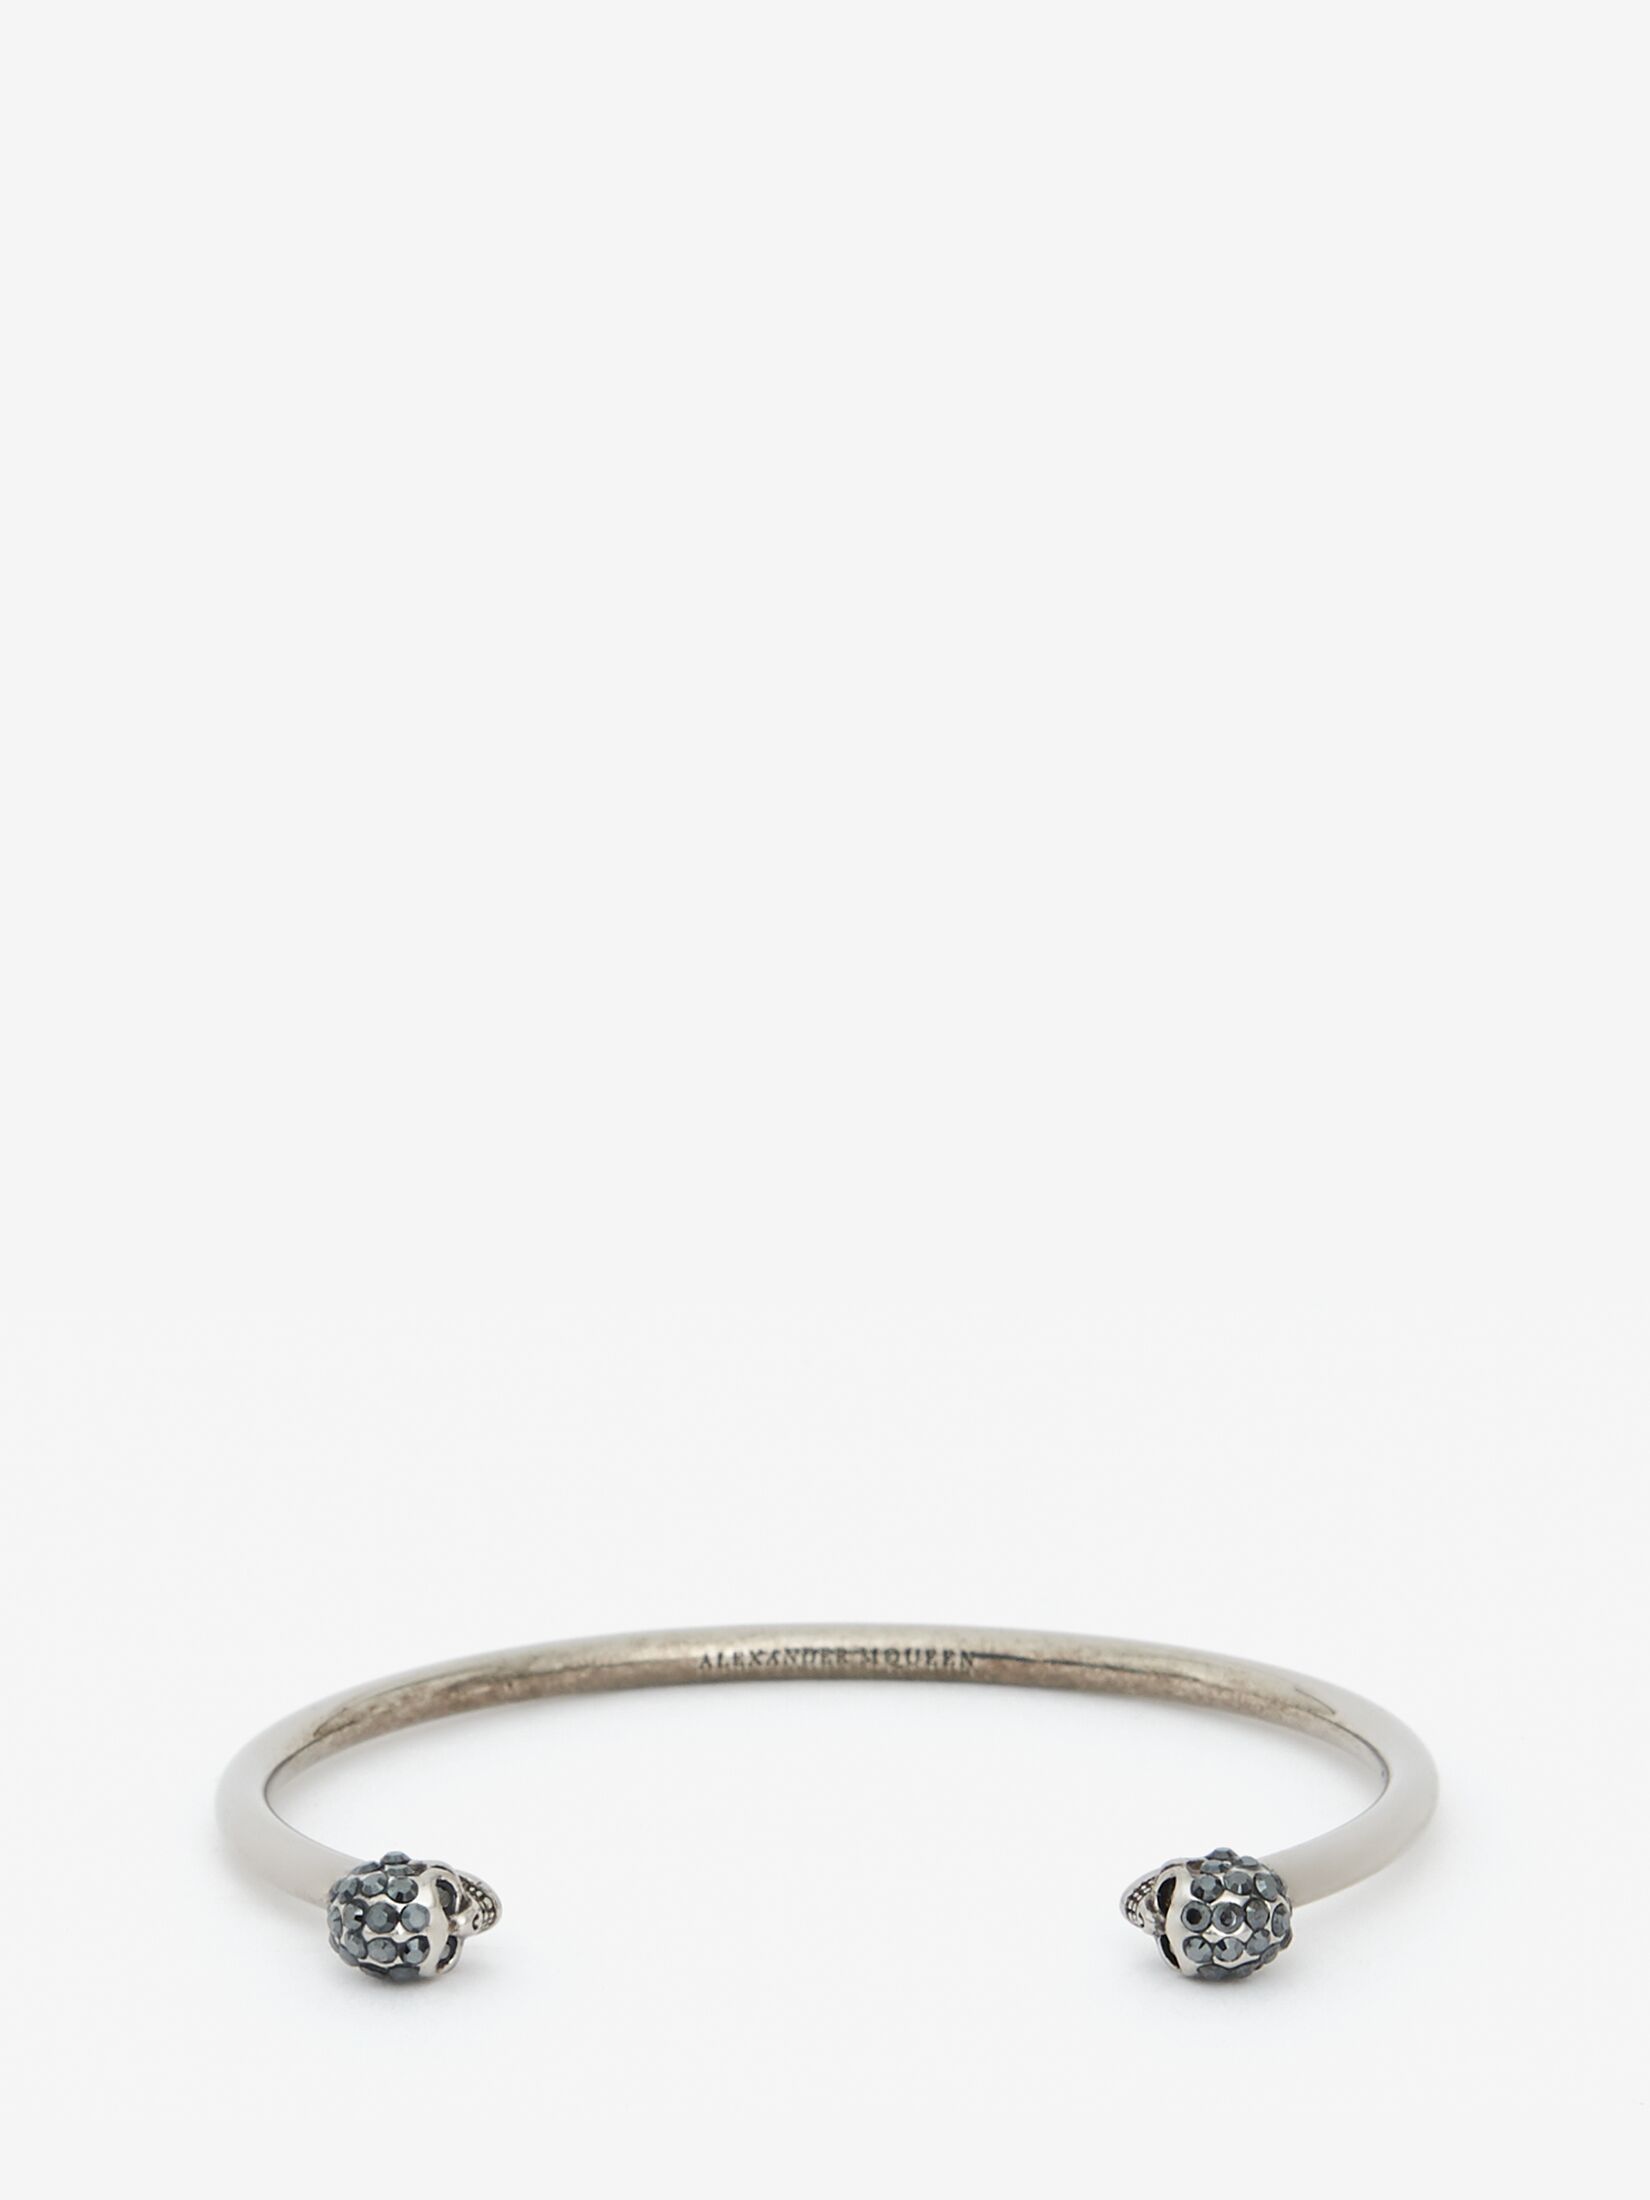 Alexander McQueen bracelet - Depop